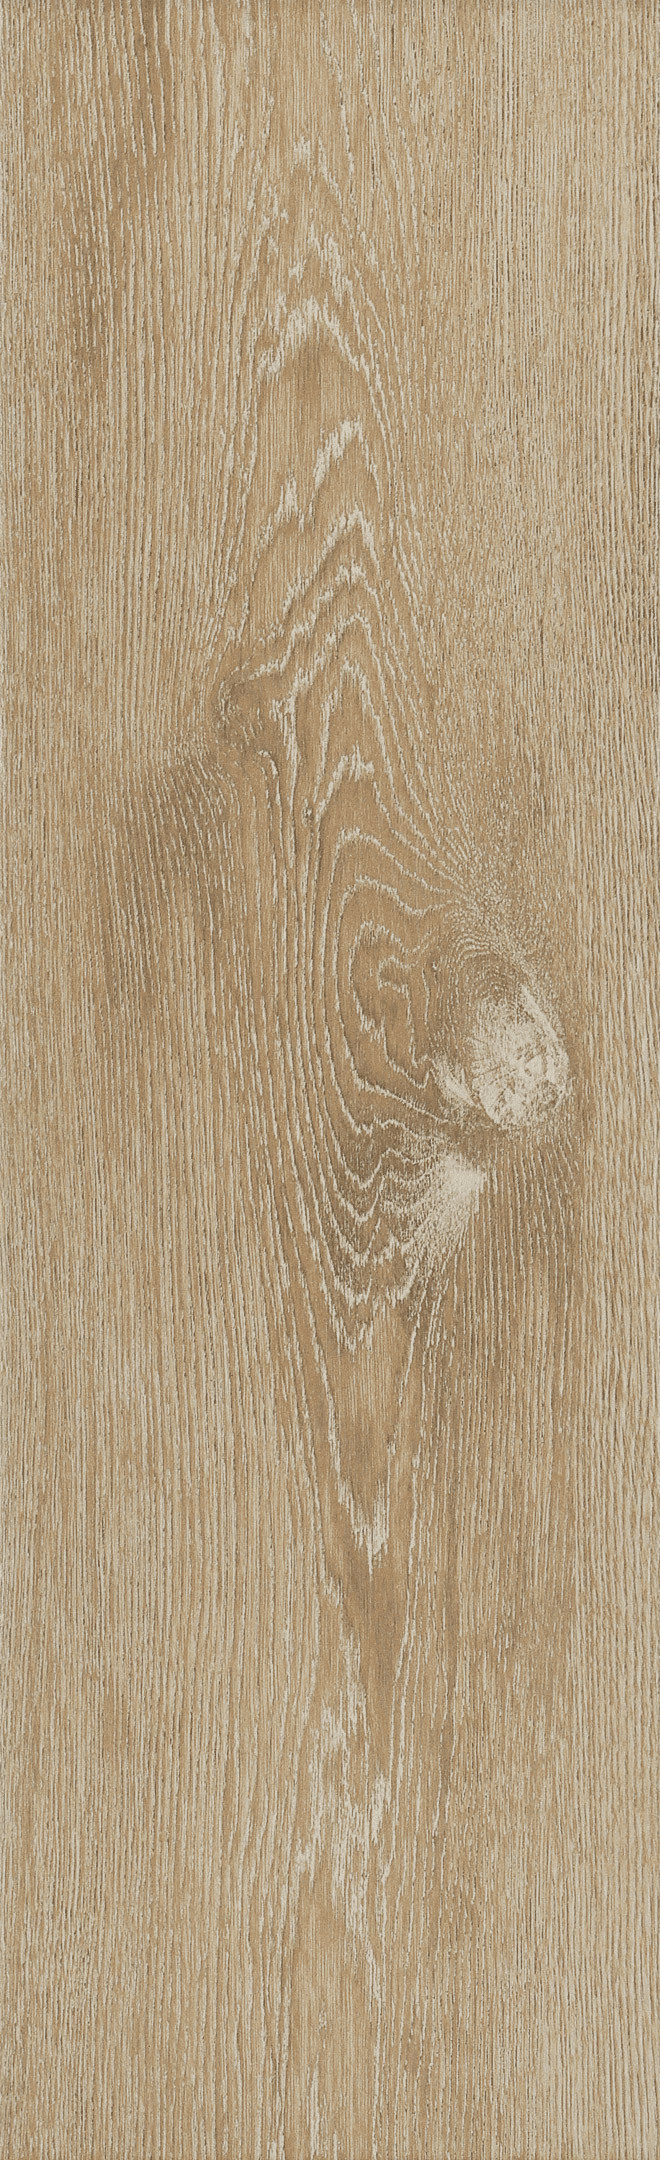 фото Керамогранит cersanit patinawood бежевый матовый 60х18,5 см (11 шт.=1,216 кв.м)